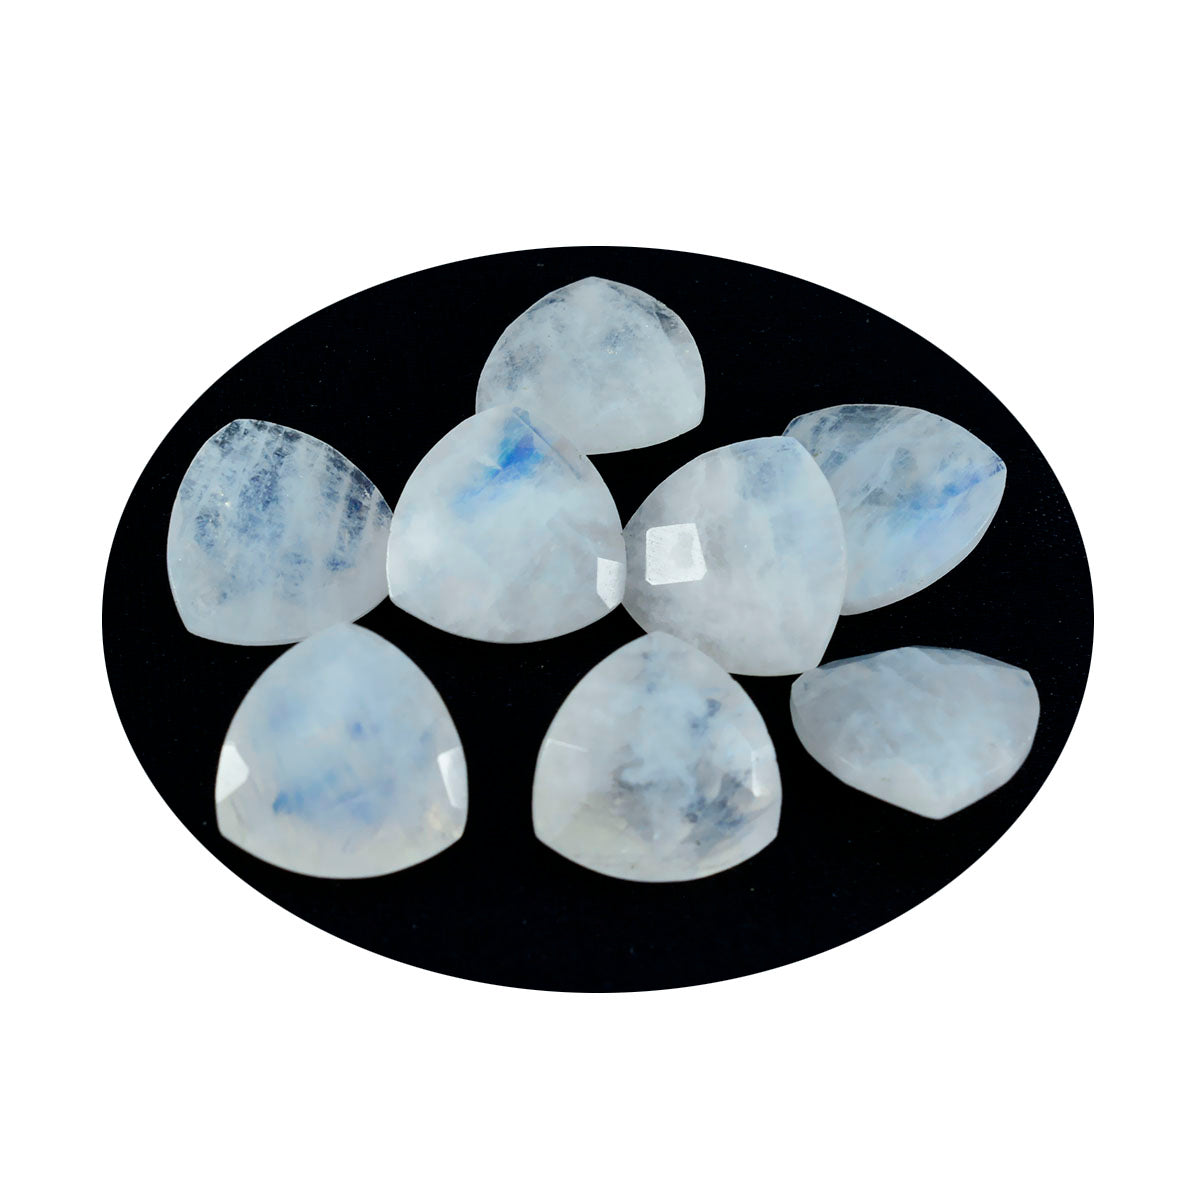 riyogems 1 шт., белый радужный лунный камень, ограненные 5x5 мм, форма триллиона, красивые качественные драгоценные камни